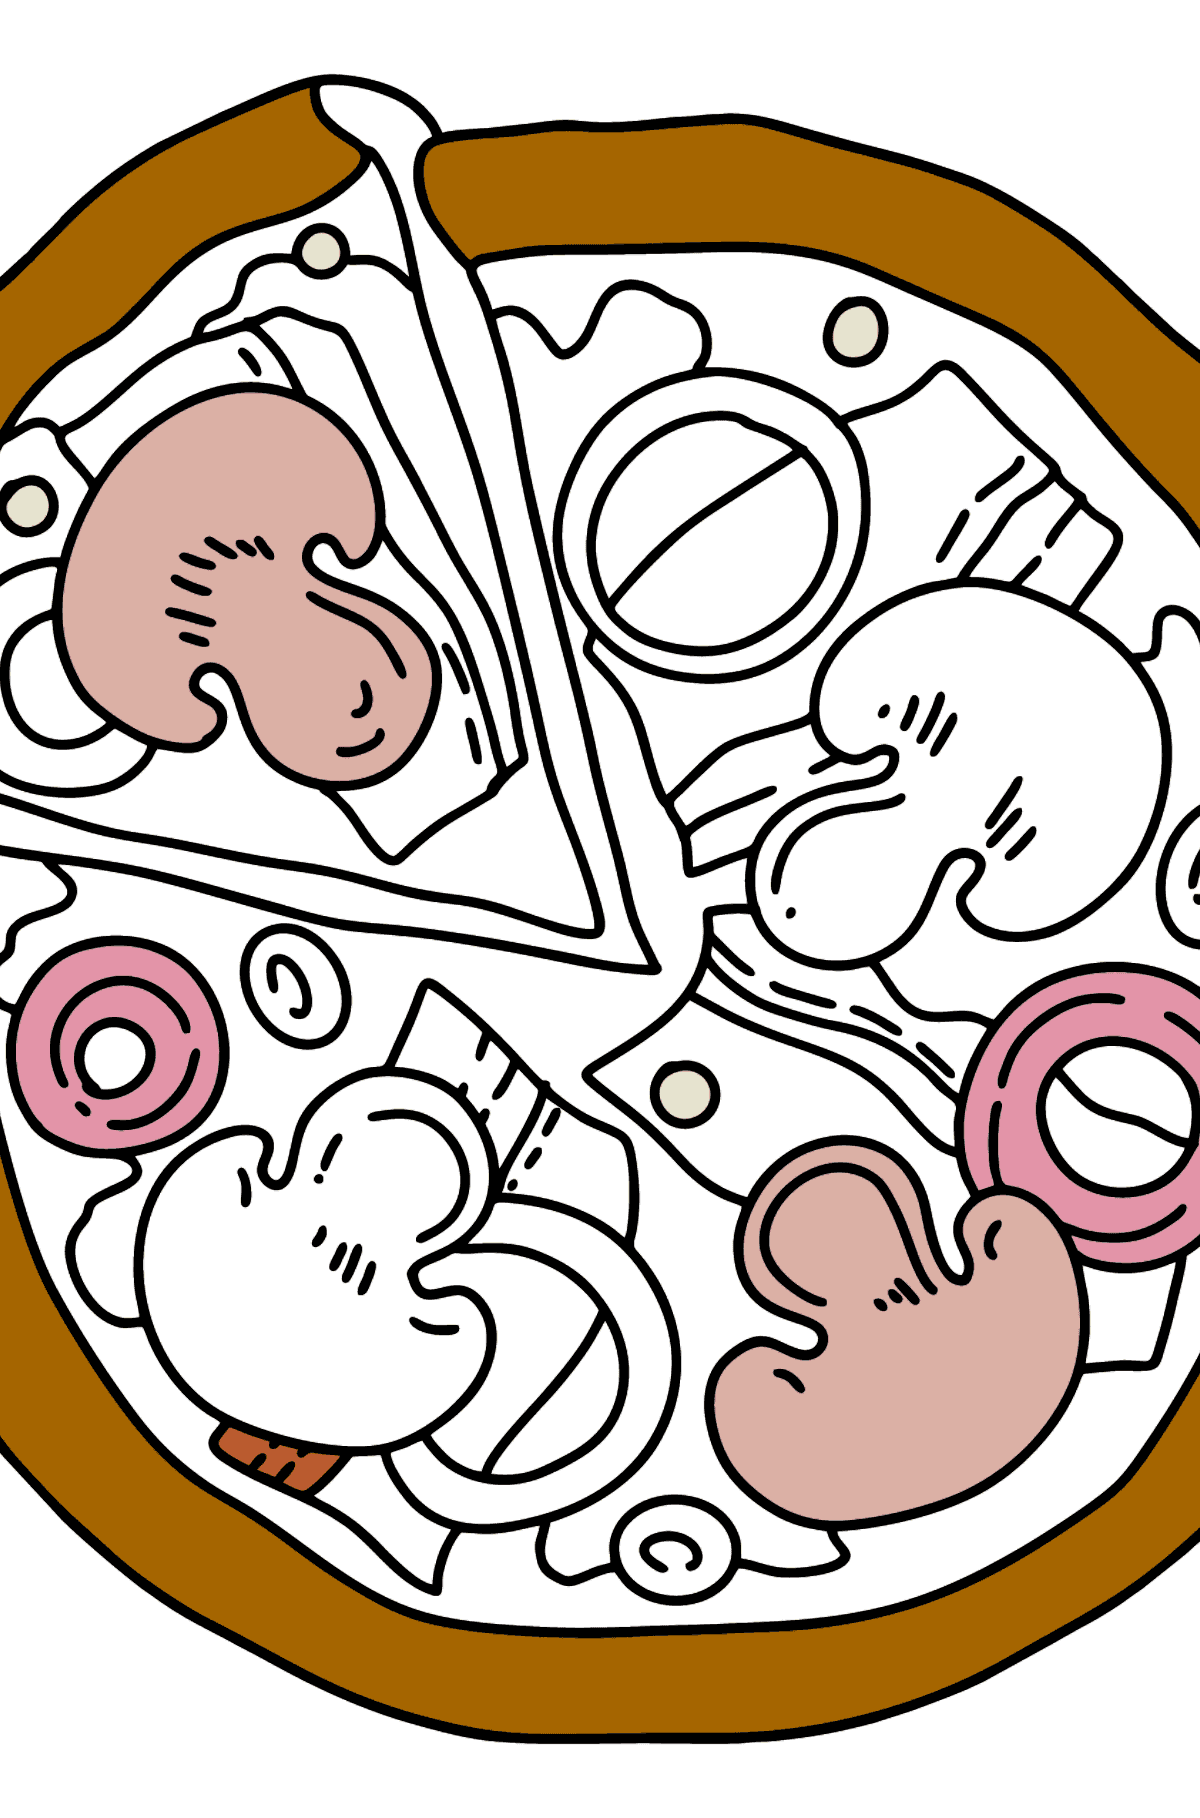 Desenho de uma pizza para colorir - Imagens para Colorir para Crianças